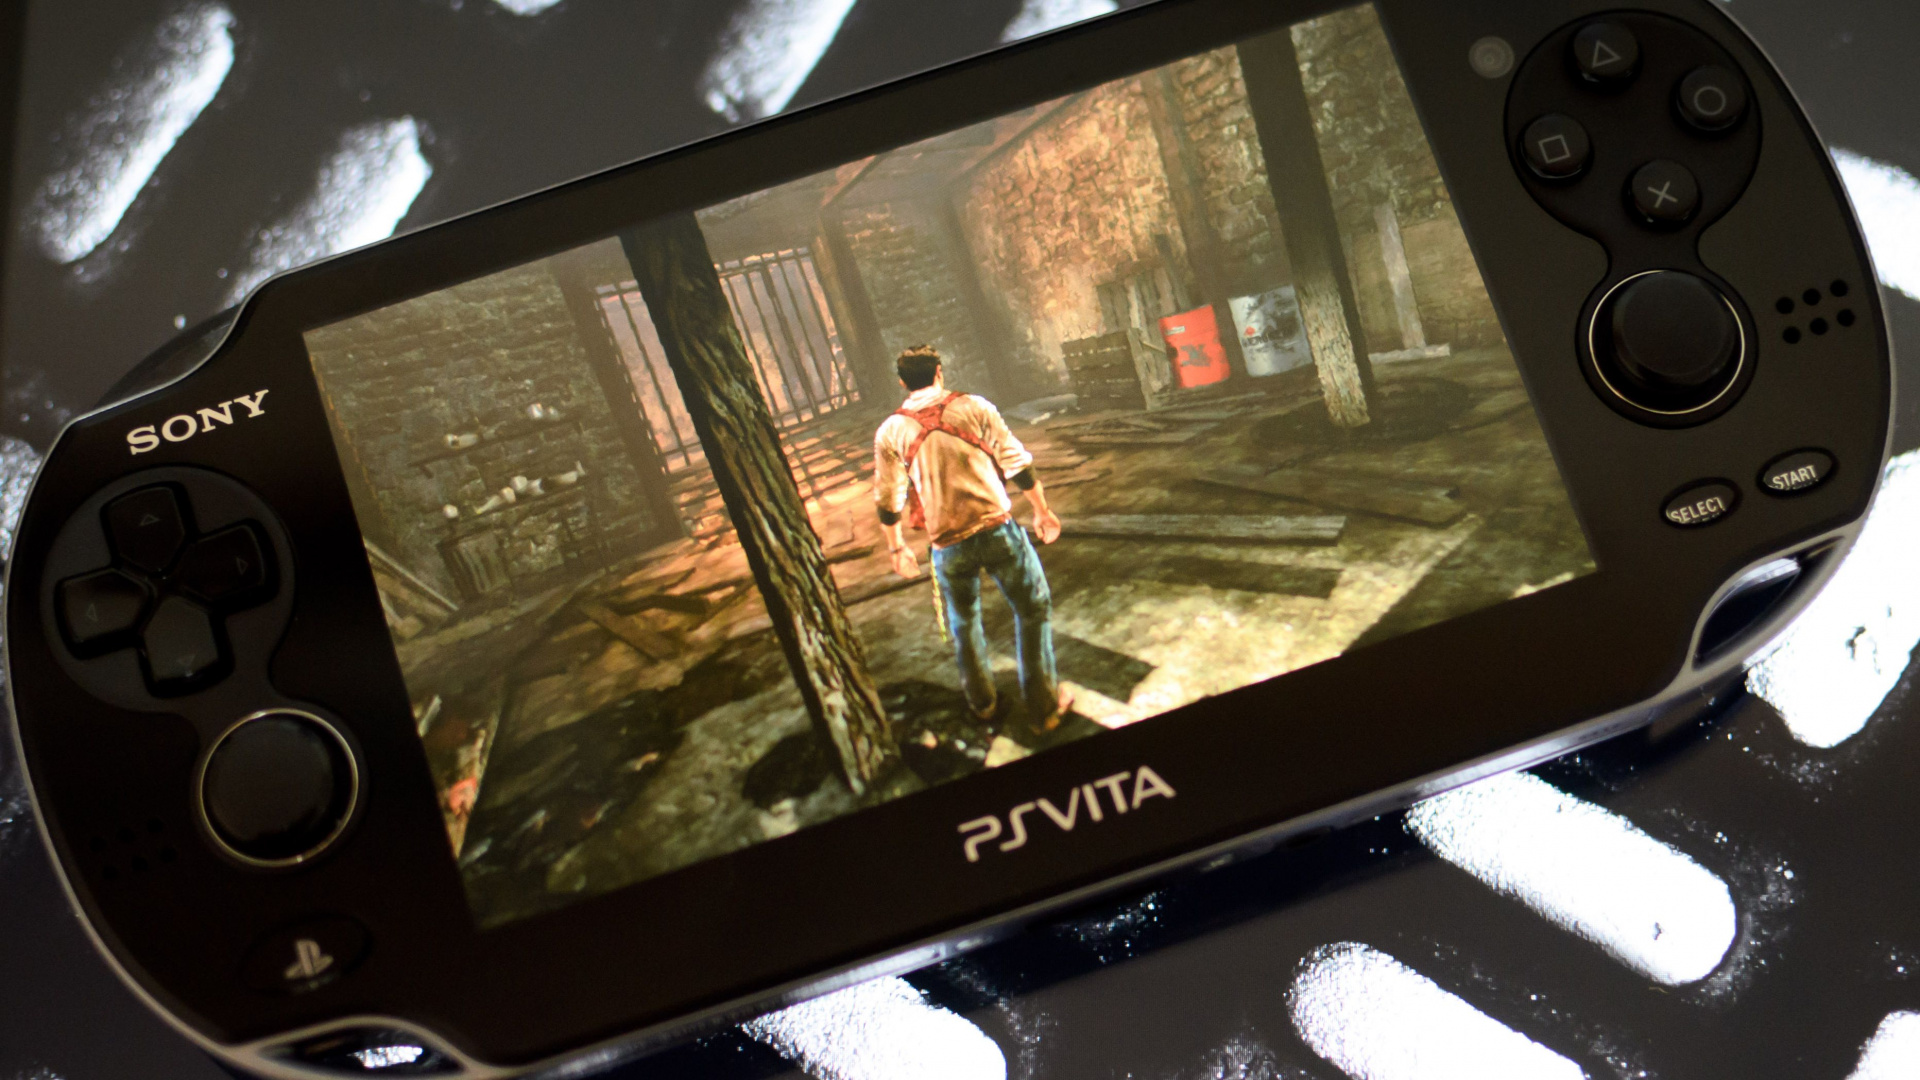 Sony больше не разрешает переносить игры и данные с PS3 на PS Vita